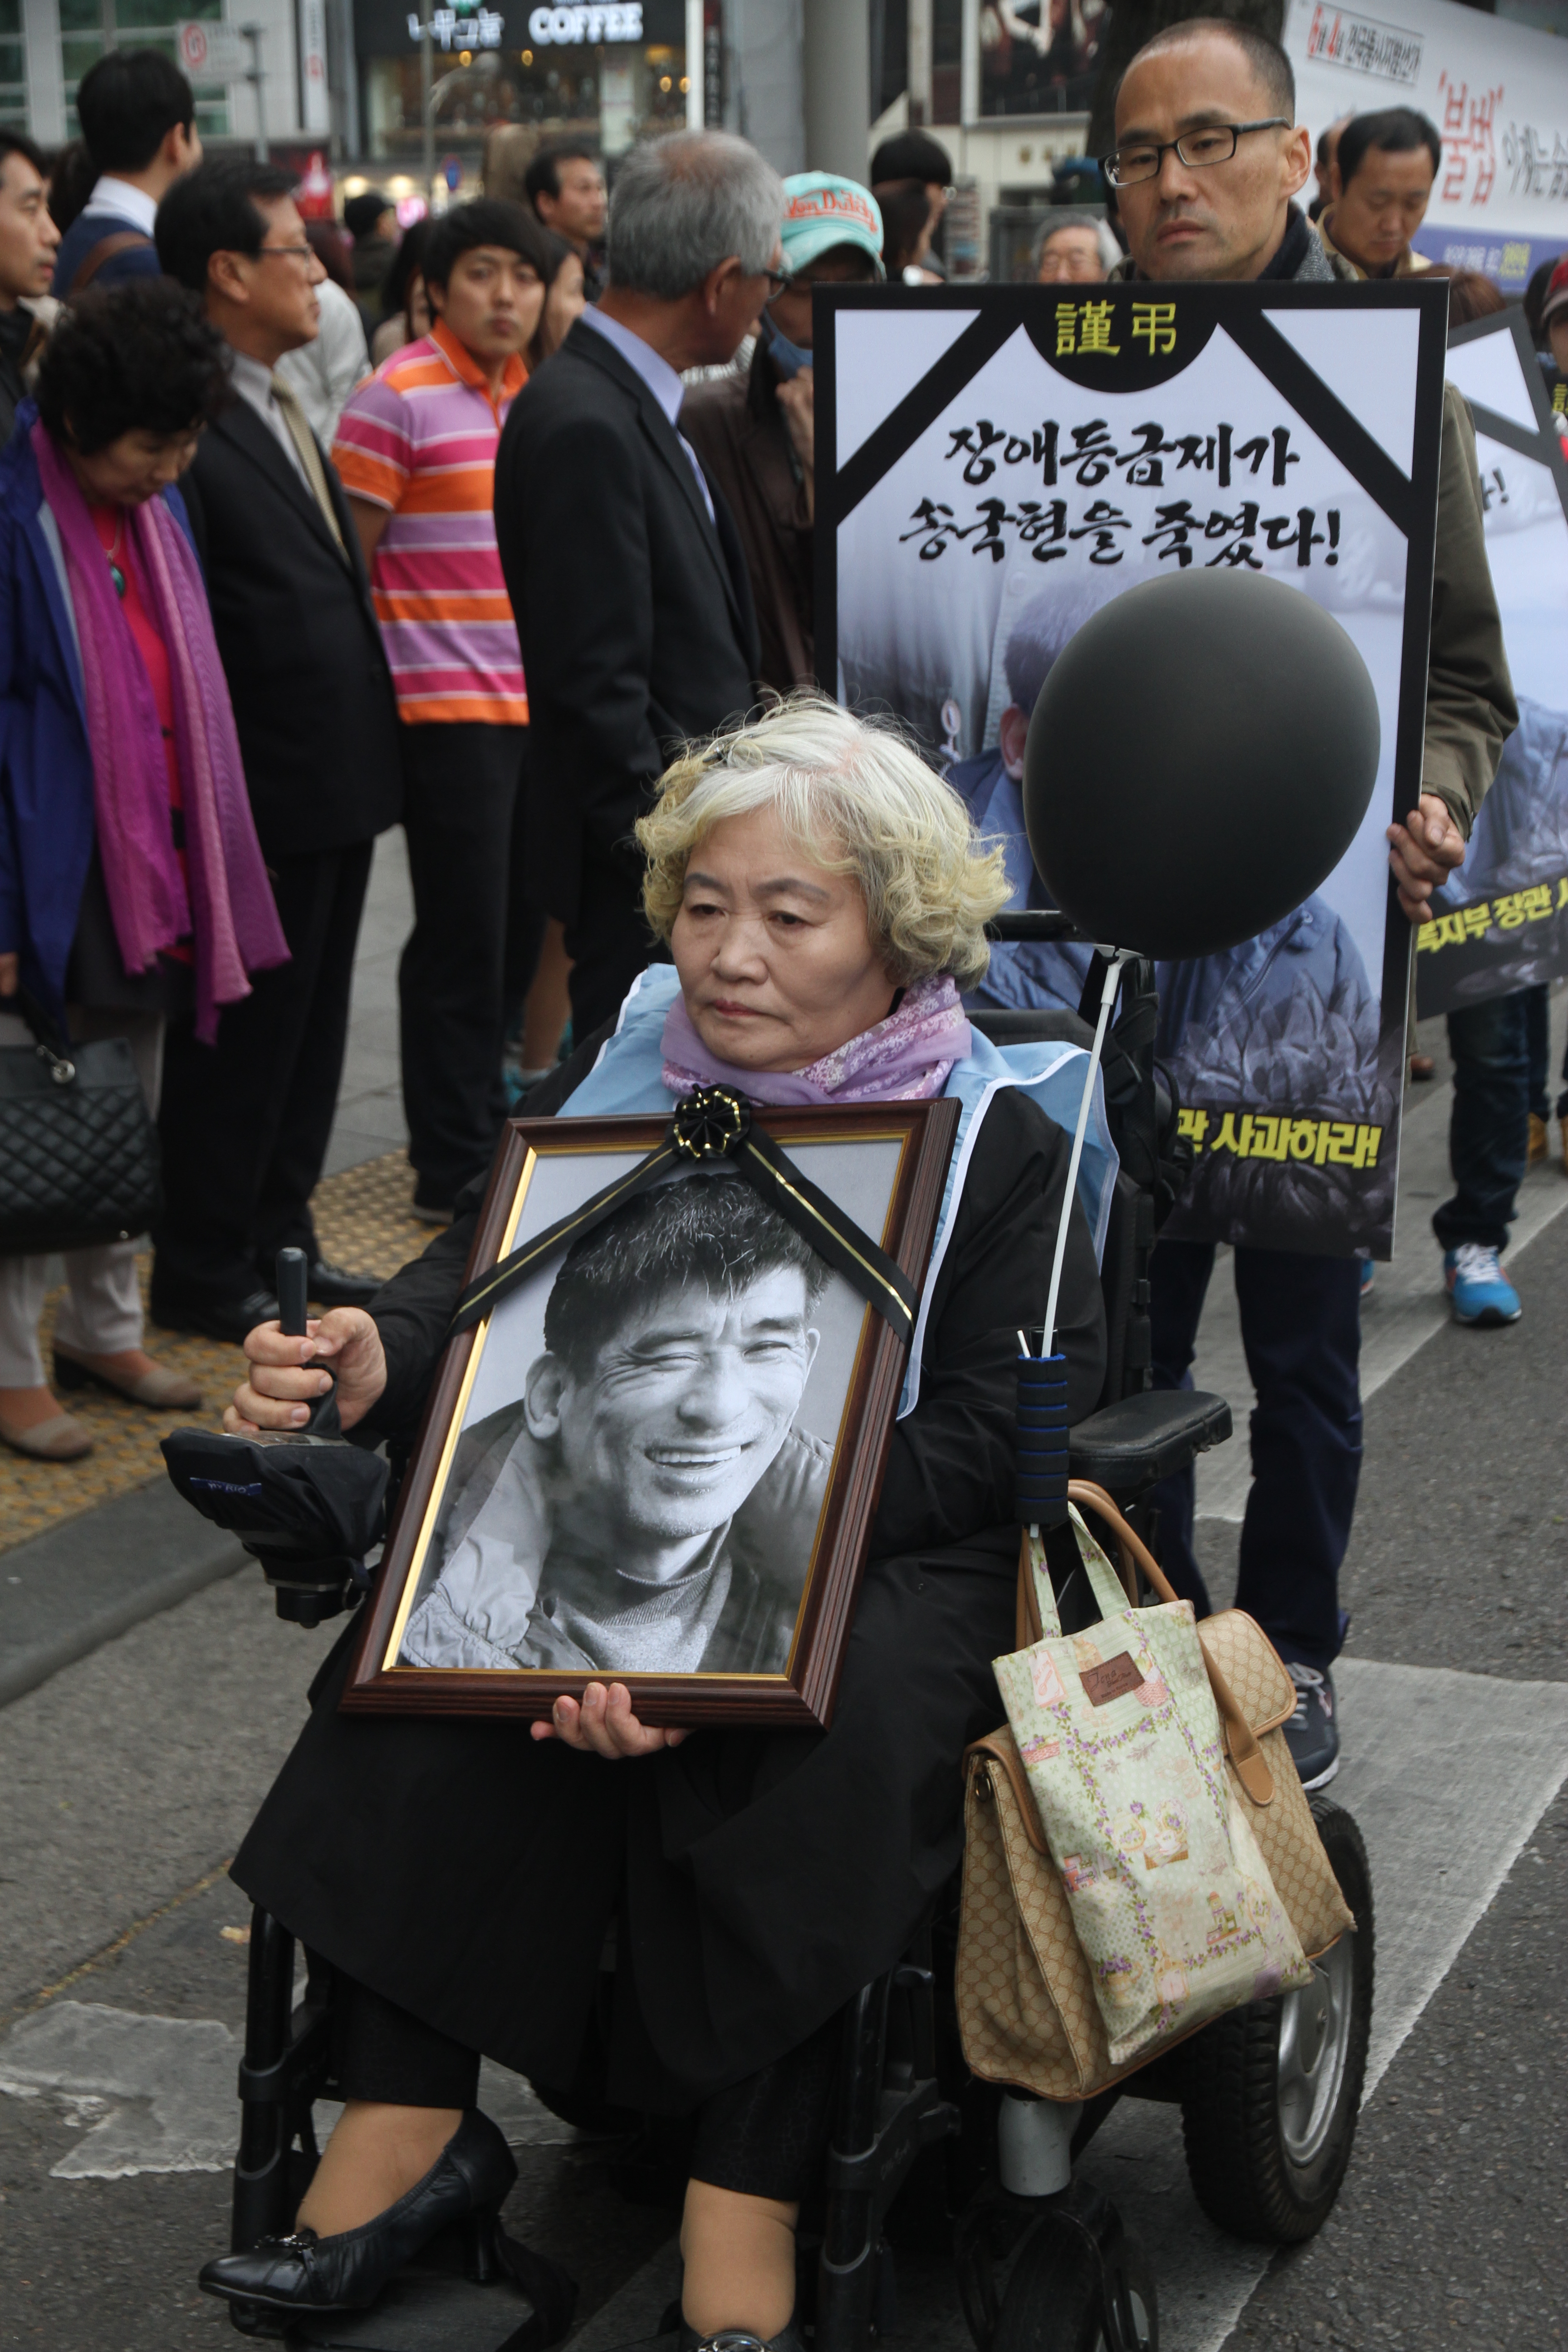  2014년 송국현씨의 장례 모습이다.
